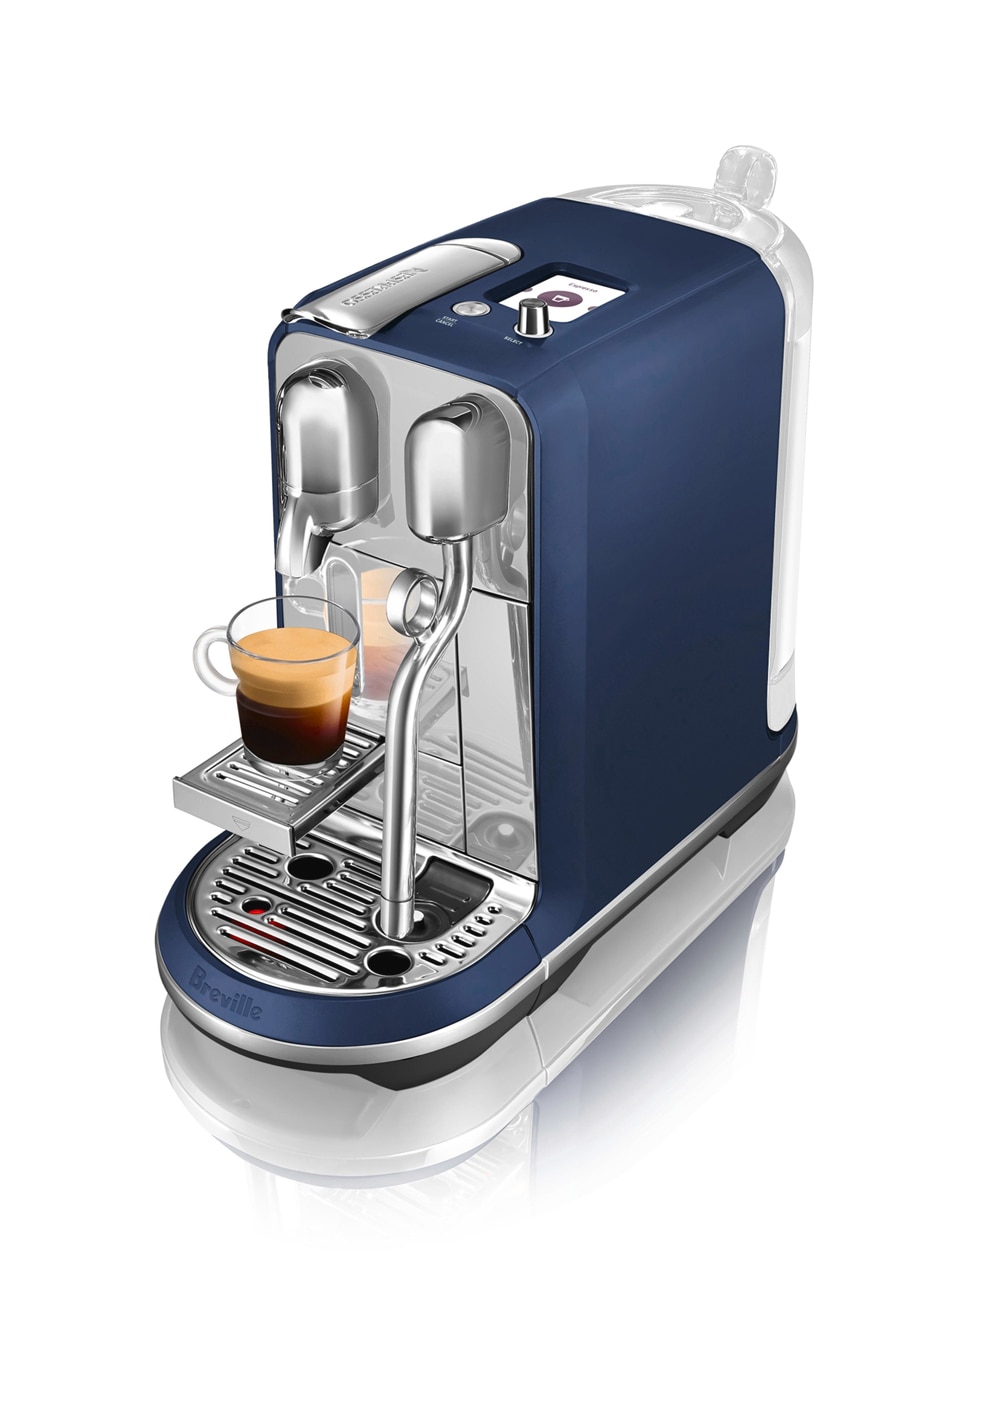 Nespresso Creatista Plus Coffee and Espresso Machine by Breville